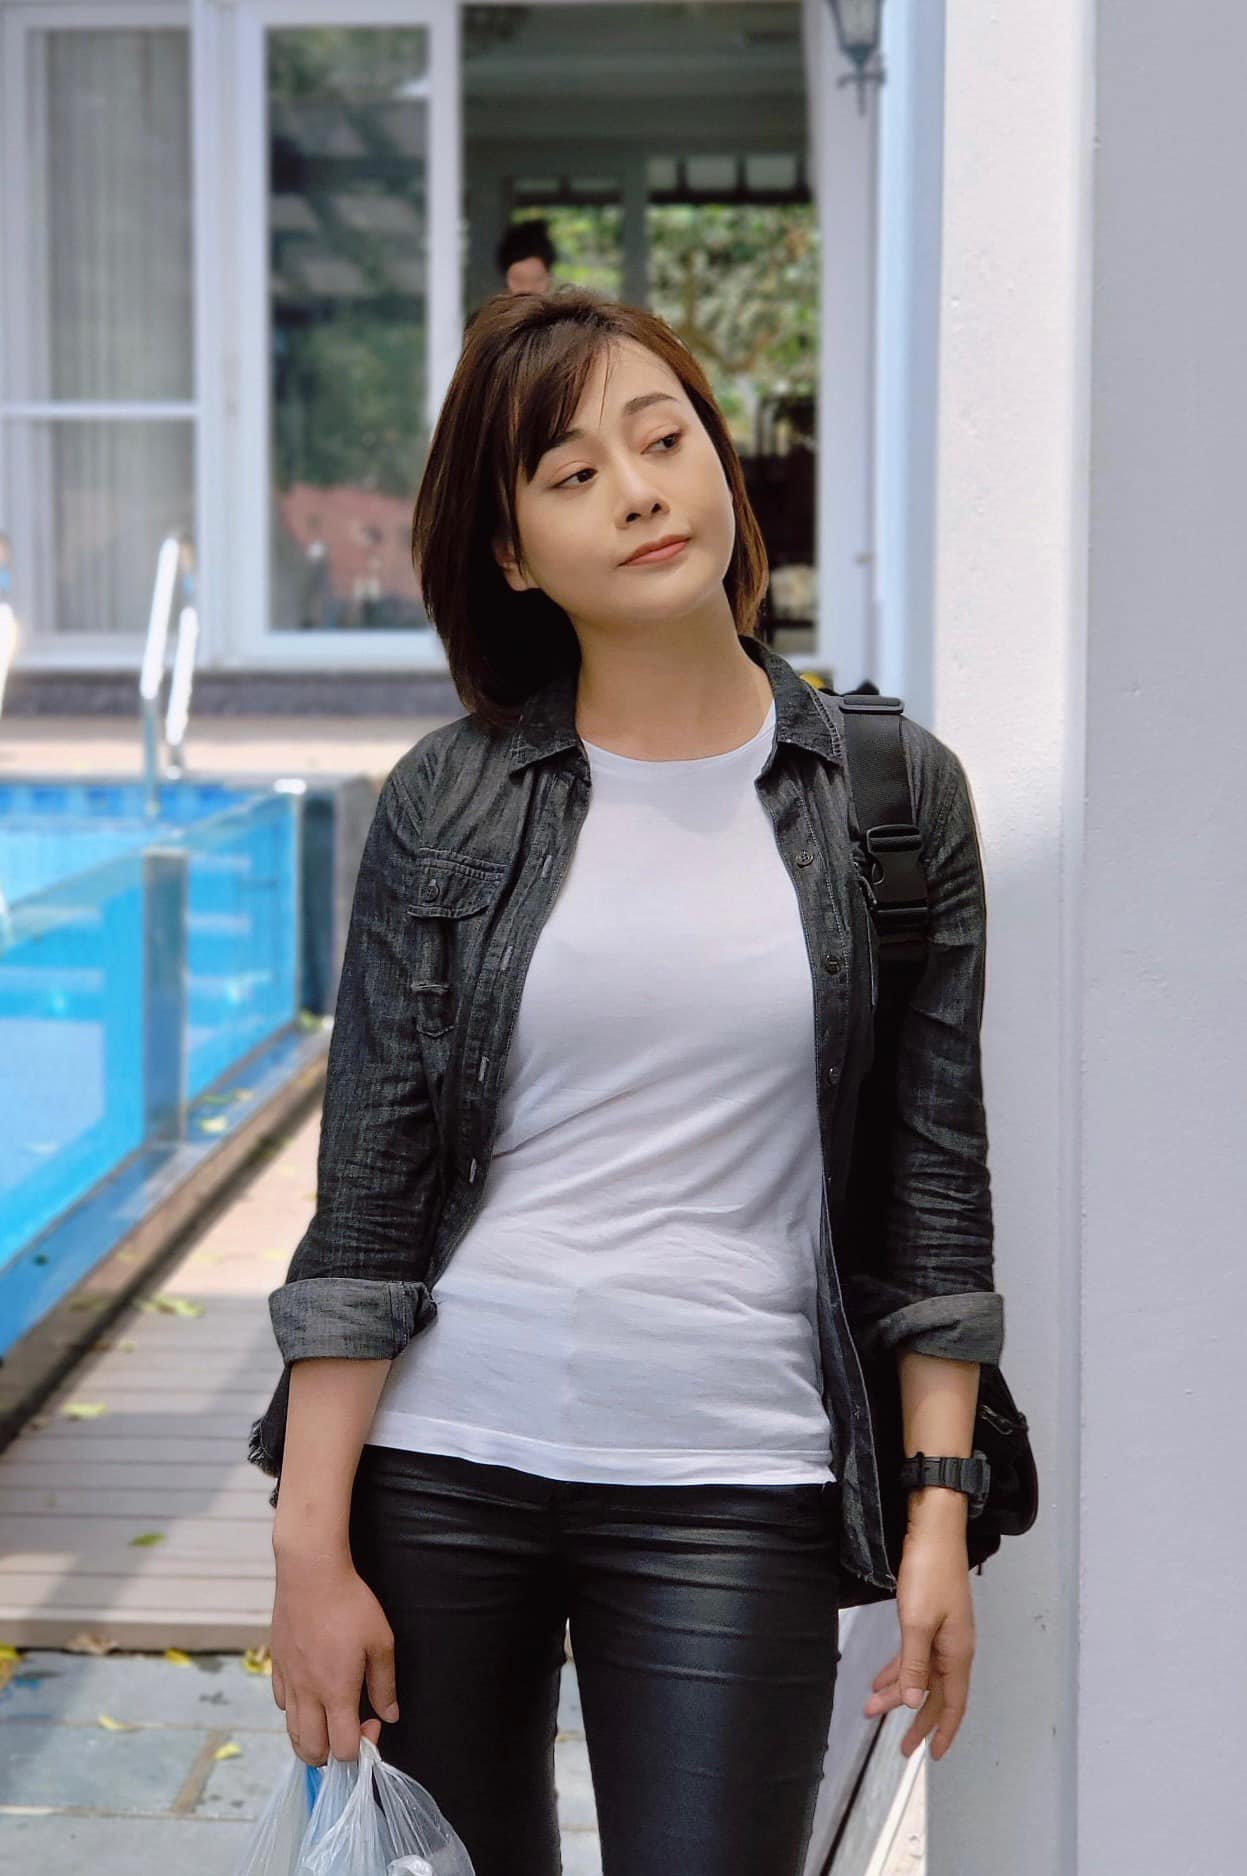 Phương Oanh nổi tiếng với vai nữ chính trong 'Hương vị tình thân' gần đây.